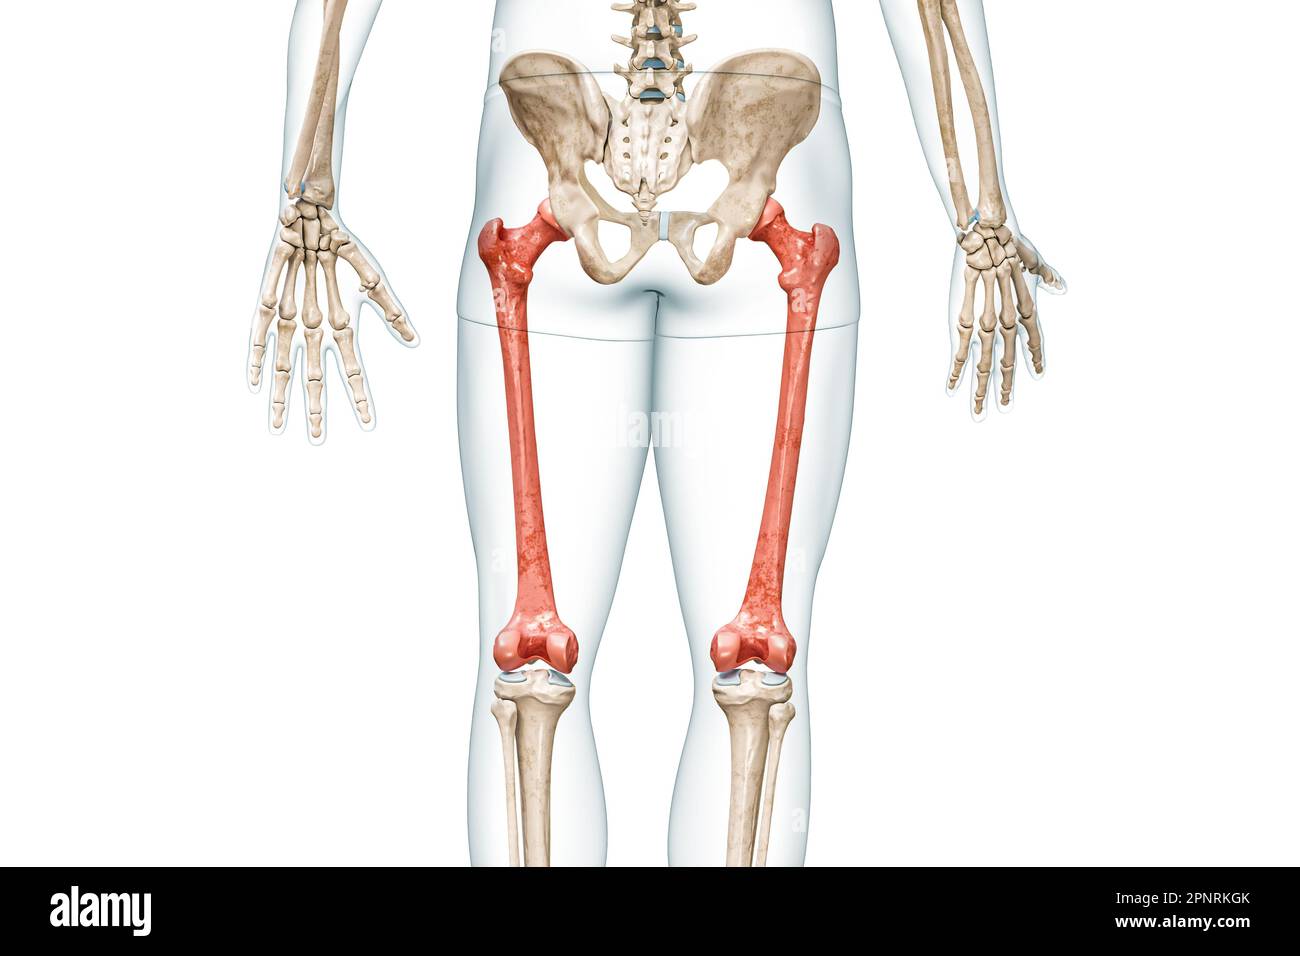 Vista posteriore delle ossa femorali di colore rosso con corpo 3D, illustrazione isolata su bianco con spazio di copia. Anatomia dello scheletro umano e delle gambe, diagnosi medica Foto Stock